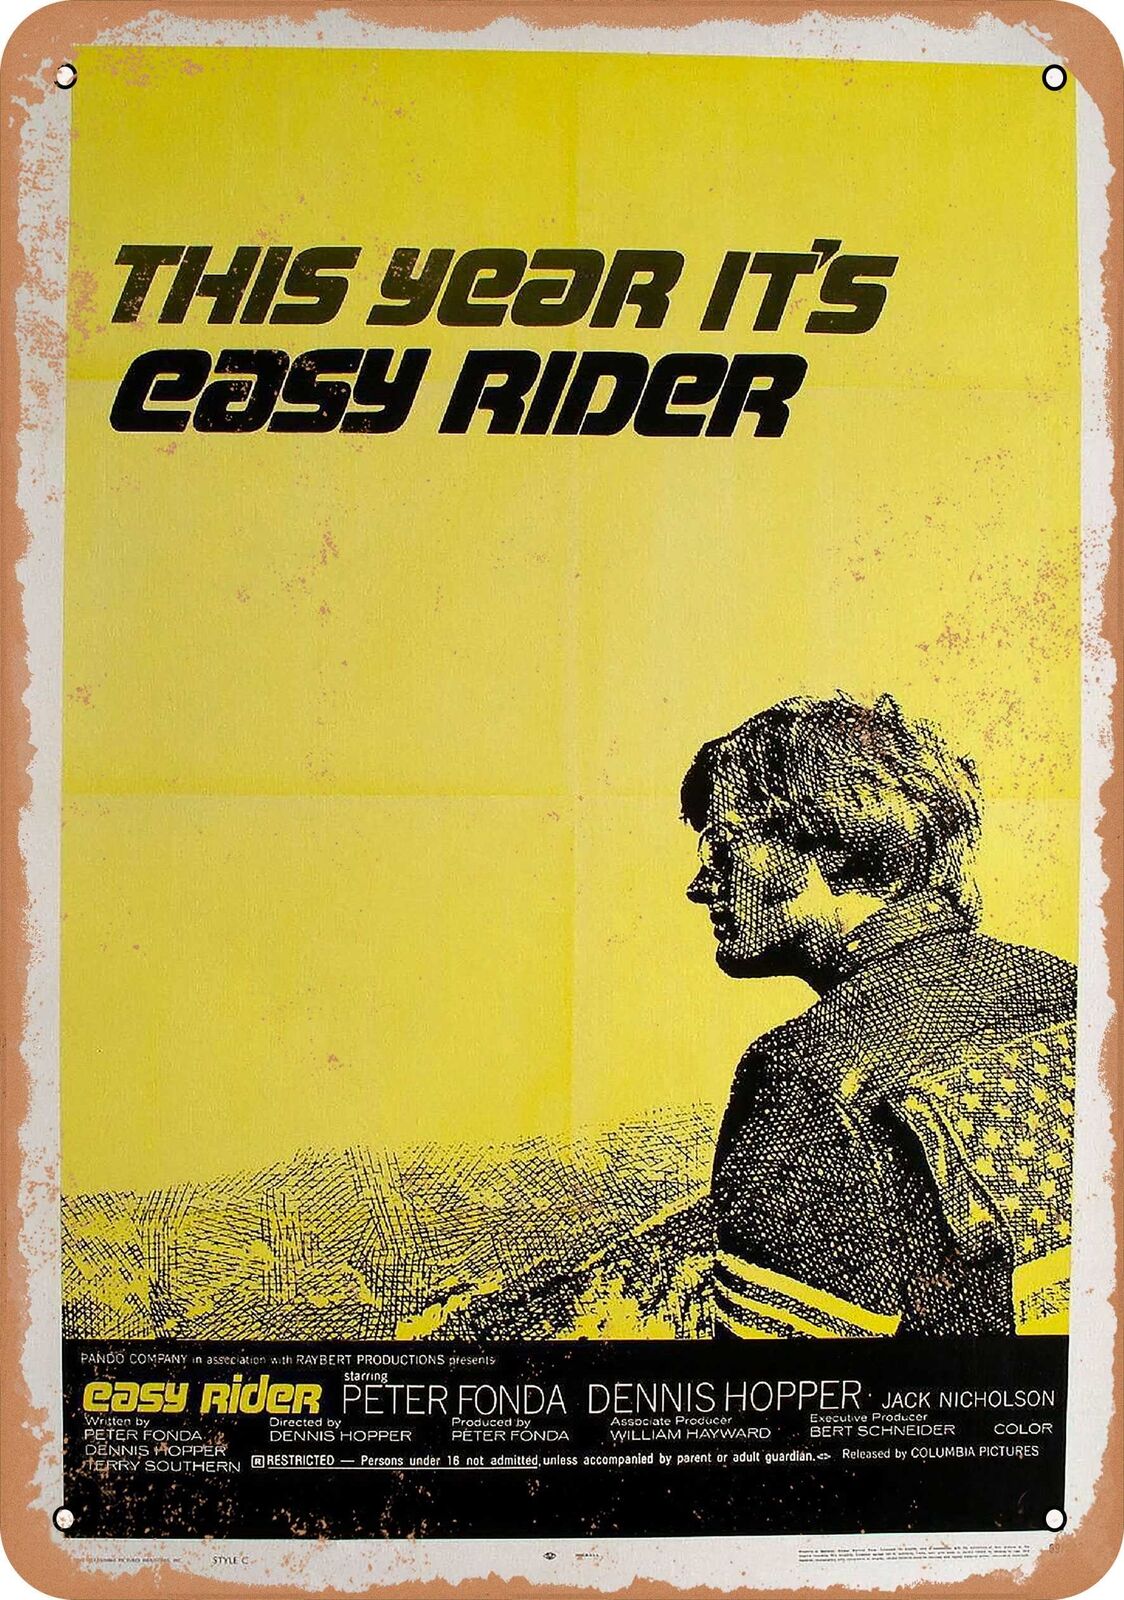 Metal Sign - Easy Rider (1969) - Vintage Look